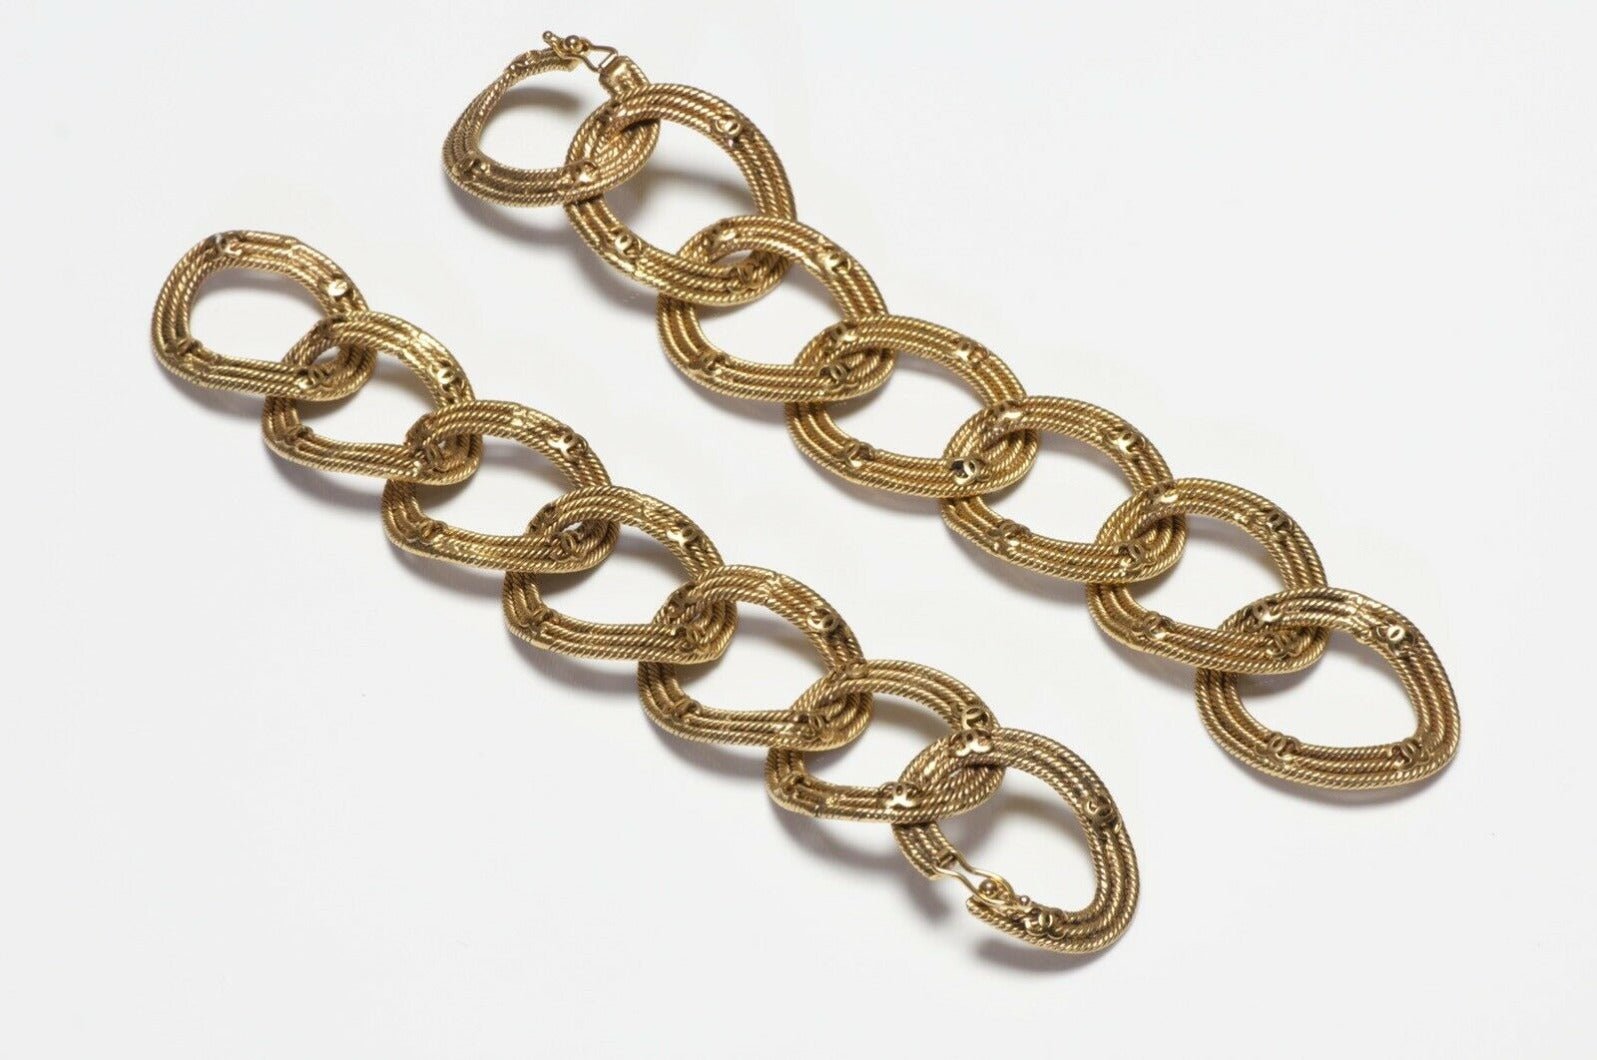 CHANEL Paris 1996 CC Woven Chain Convertible 2 Bracelets Necklace